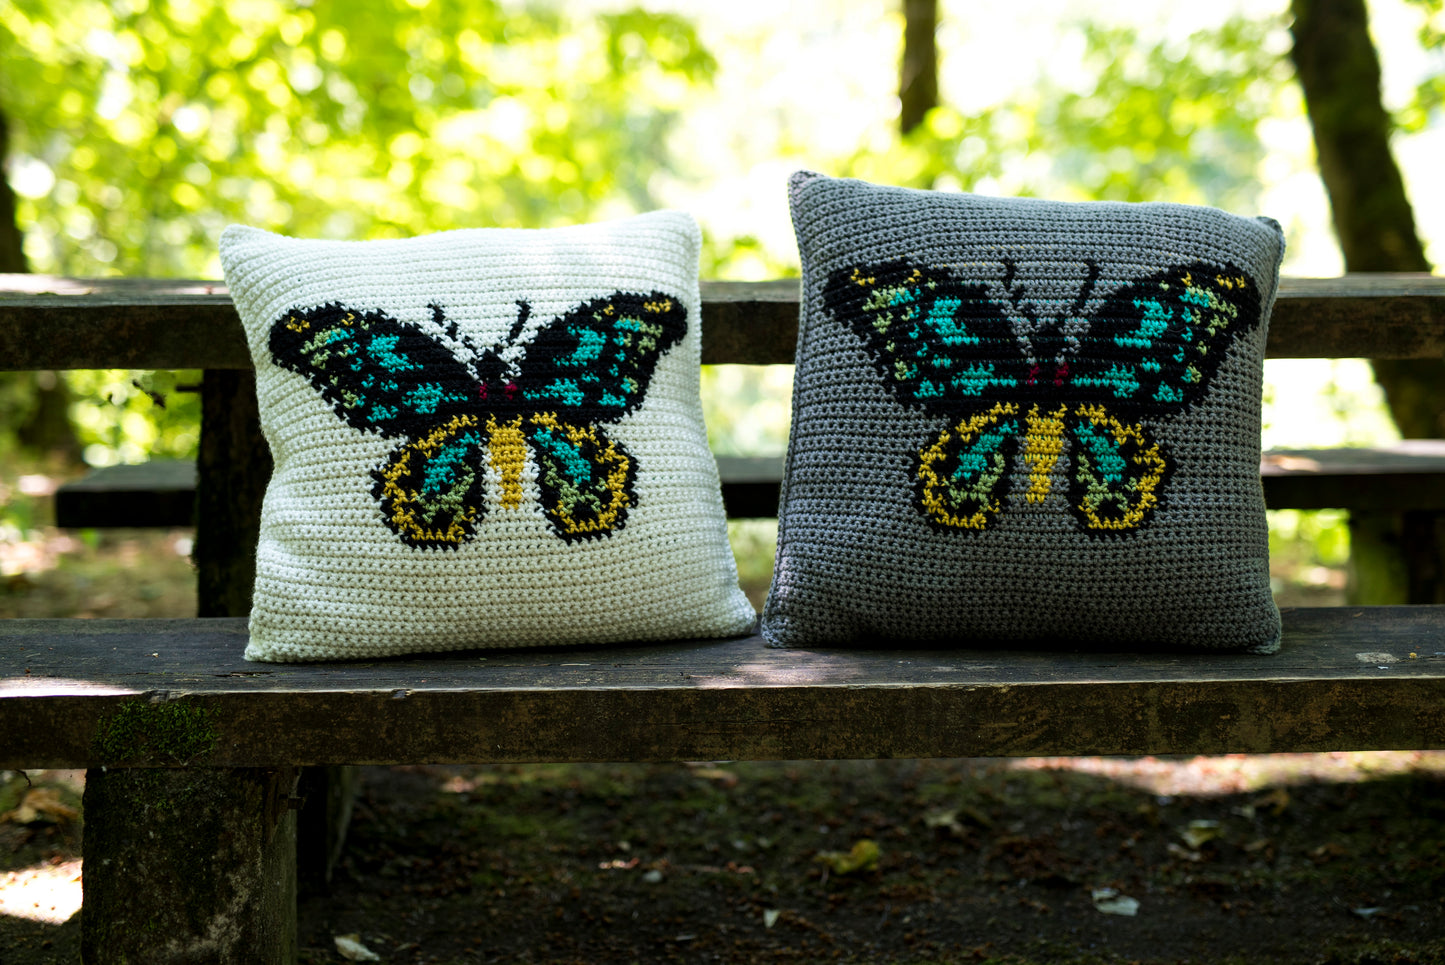 Crochet Pattern: The Birdwing Pillow